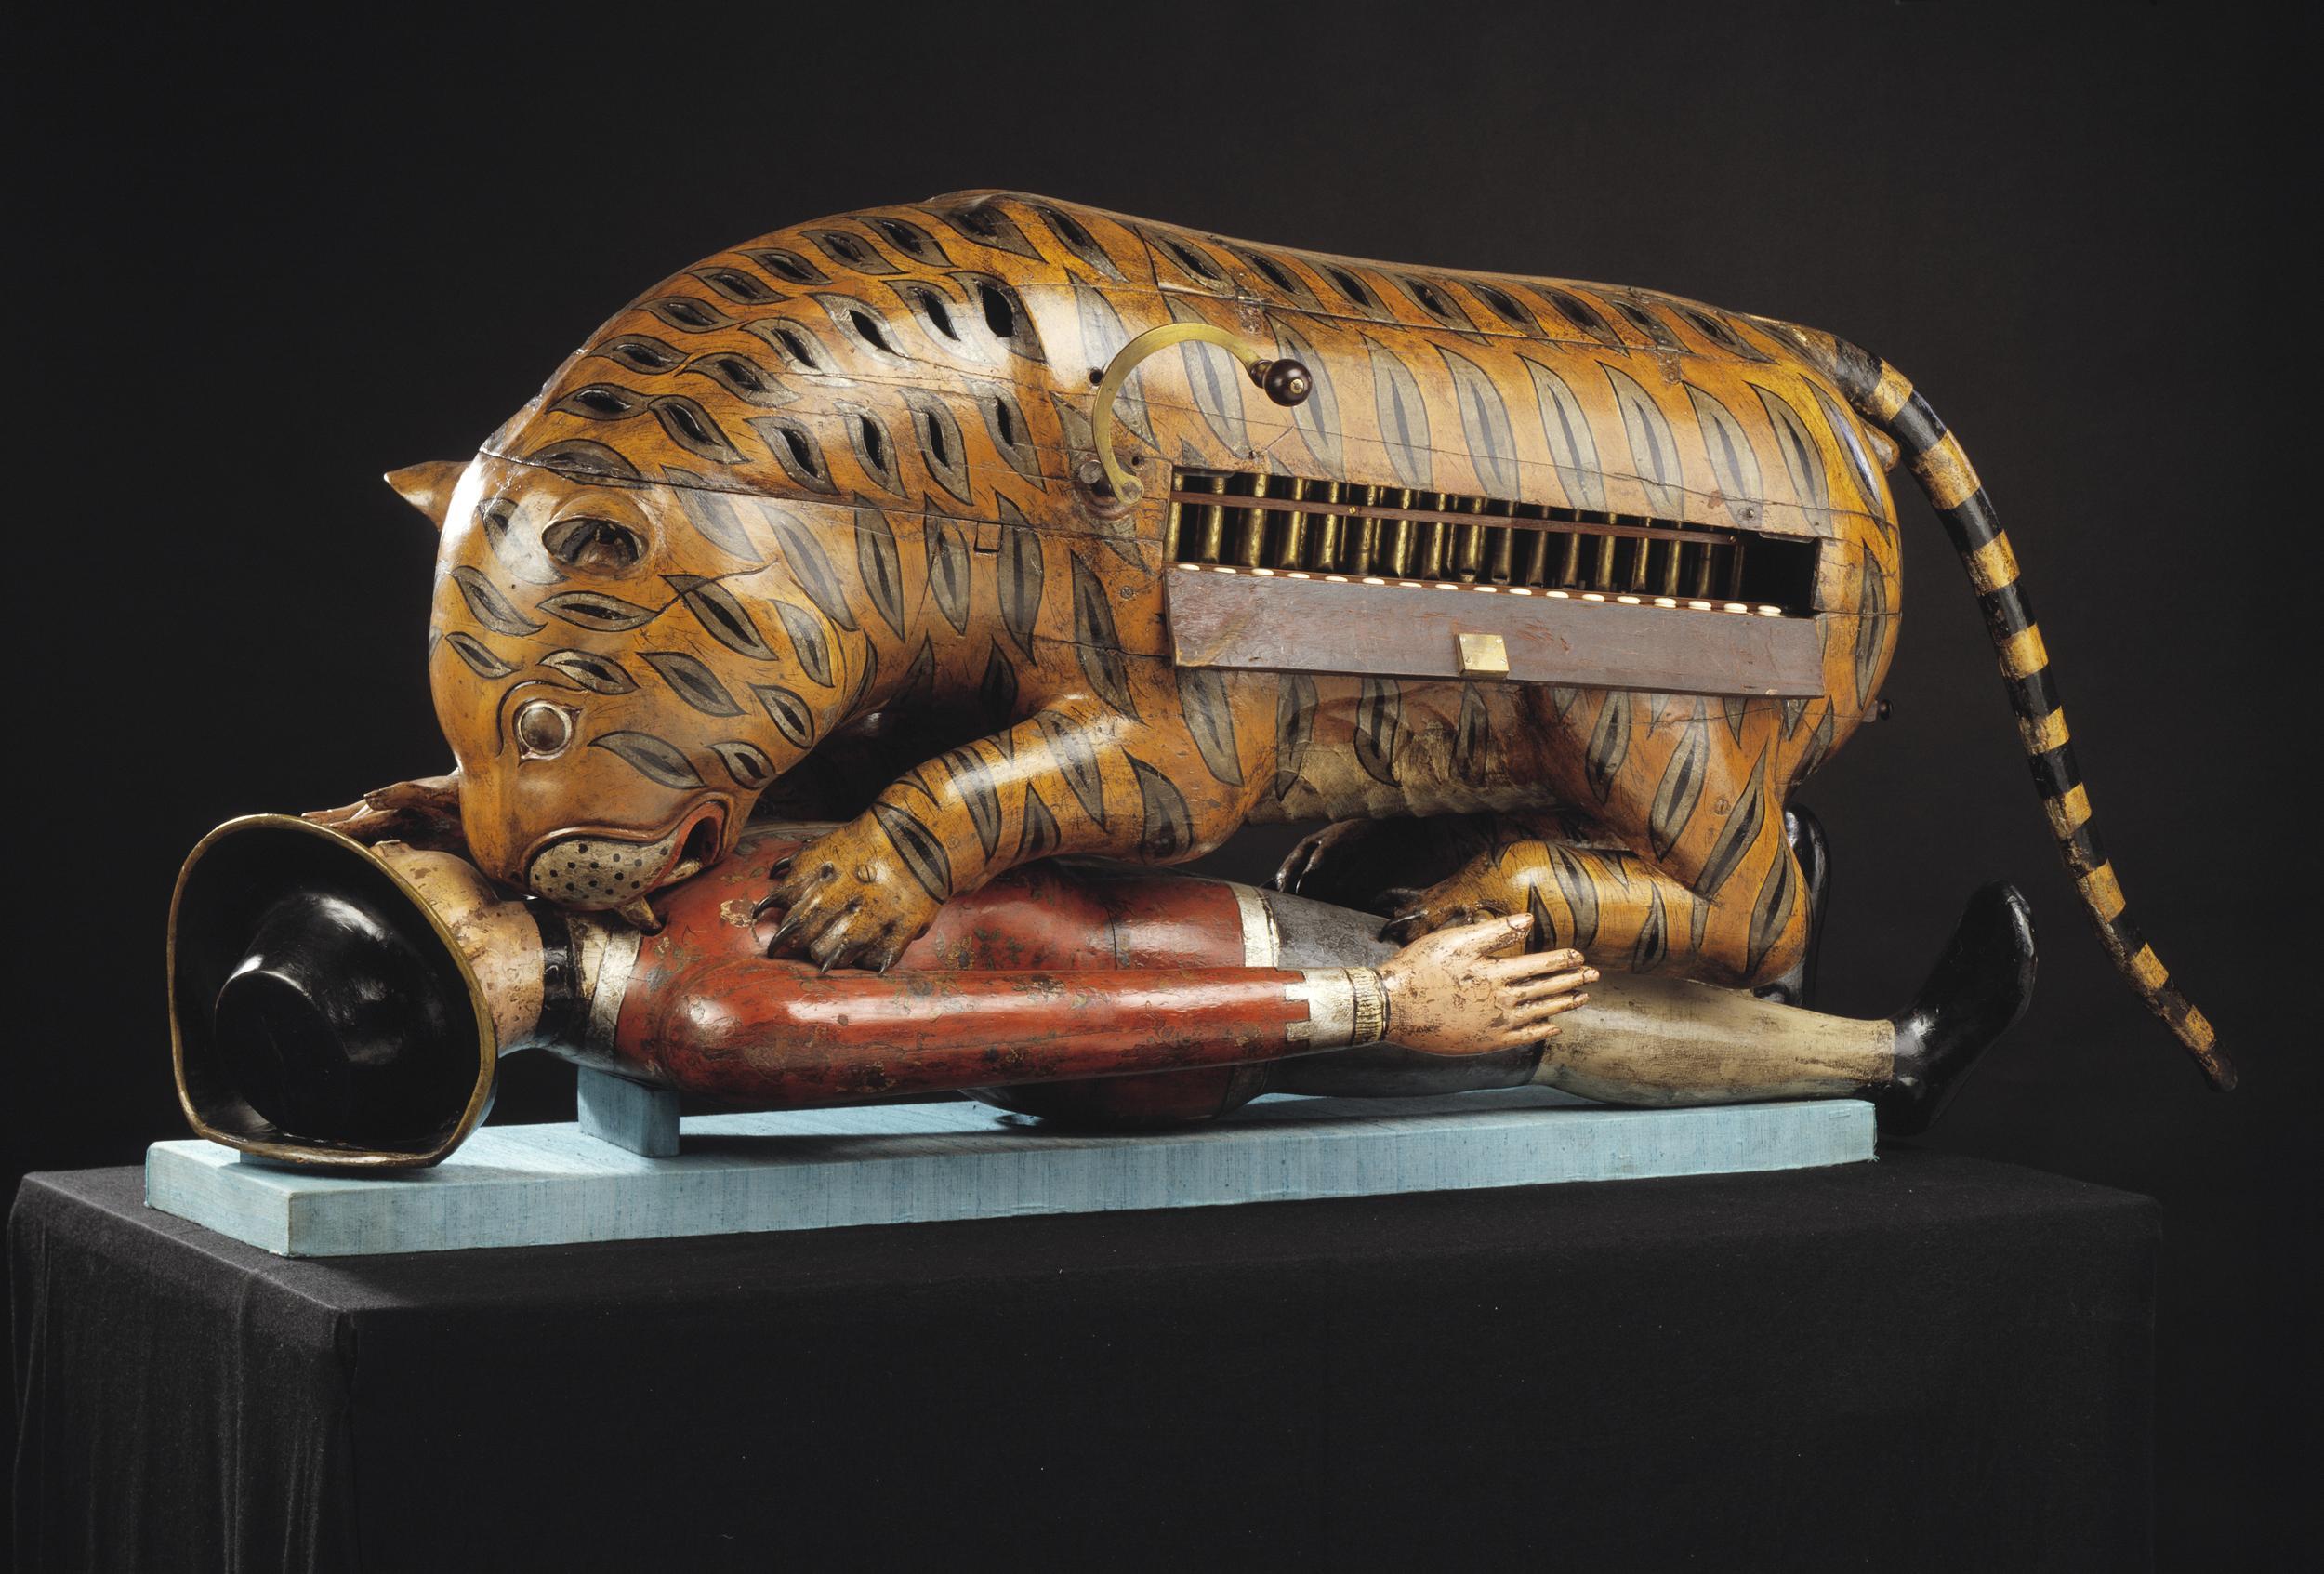 Tipu's Tiger by Onbekende Artiest - 1793 